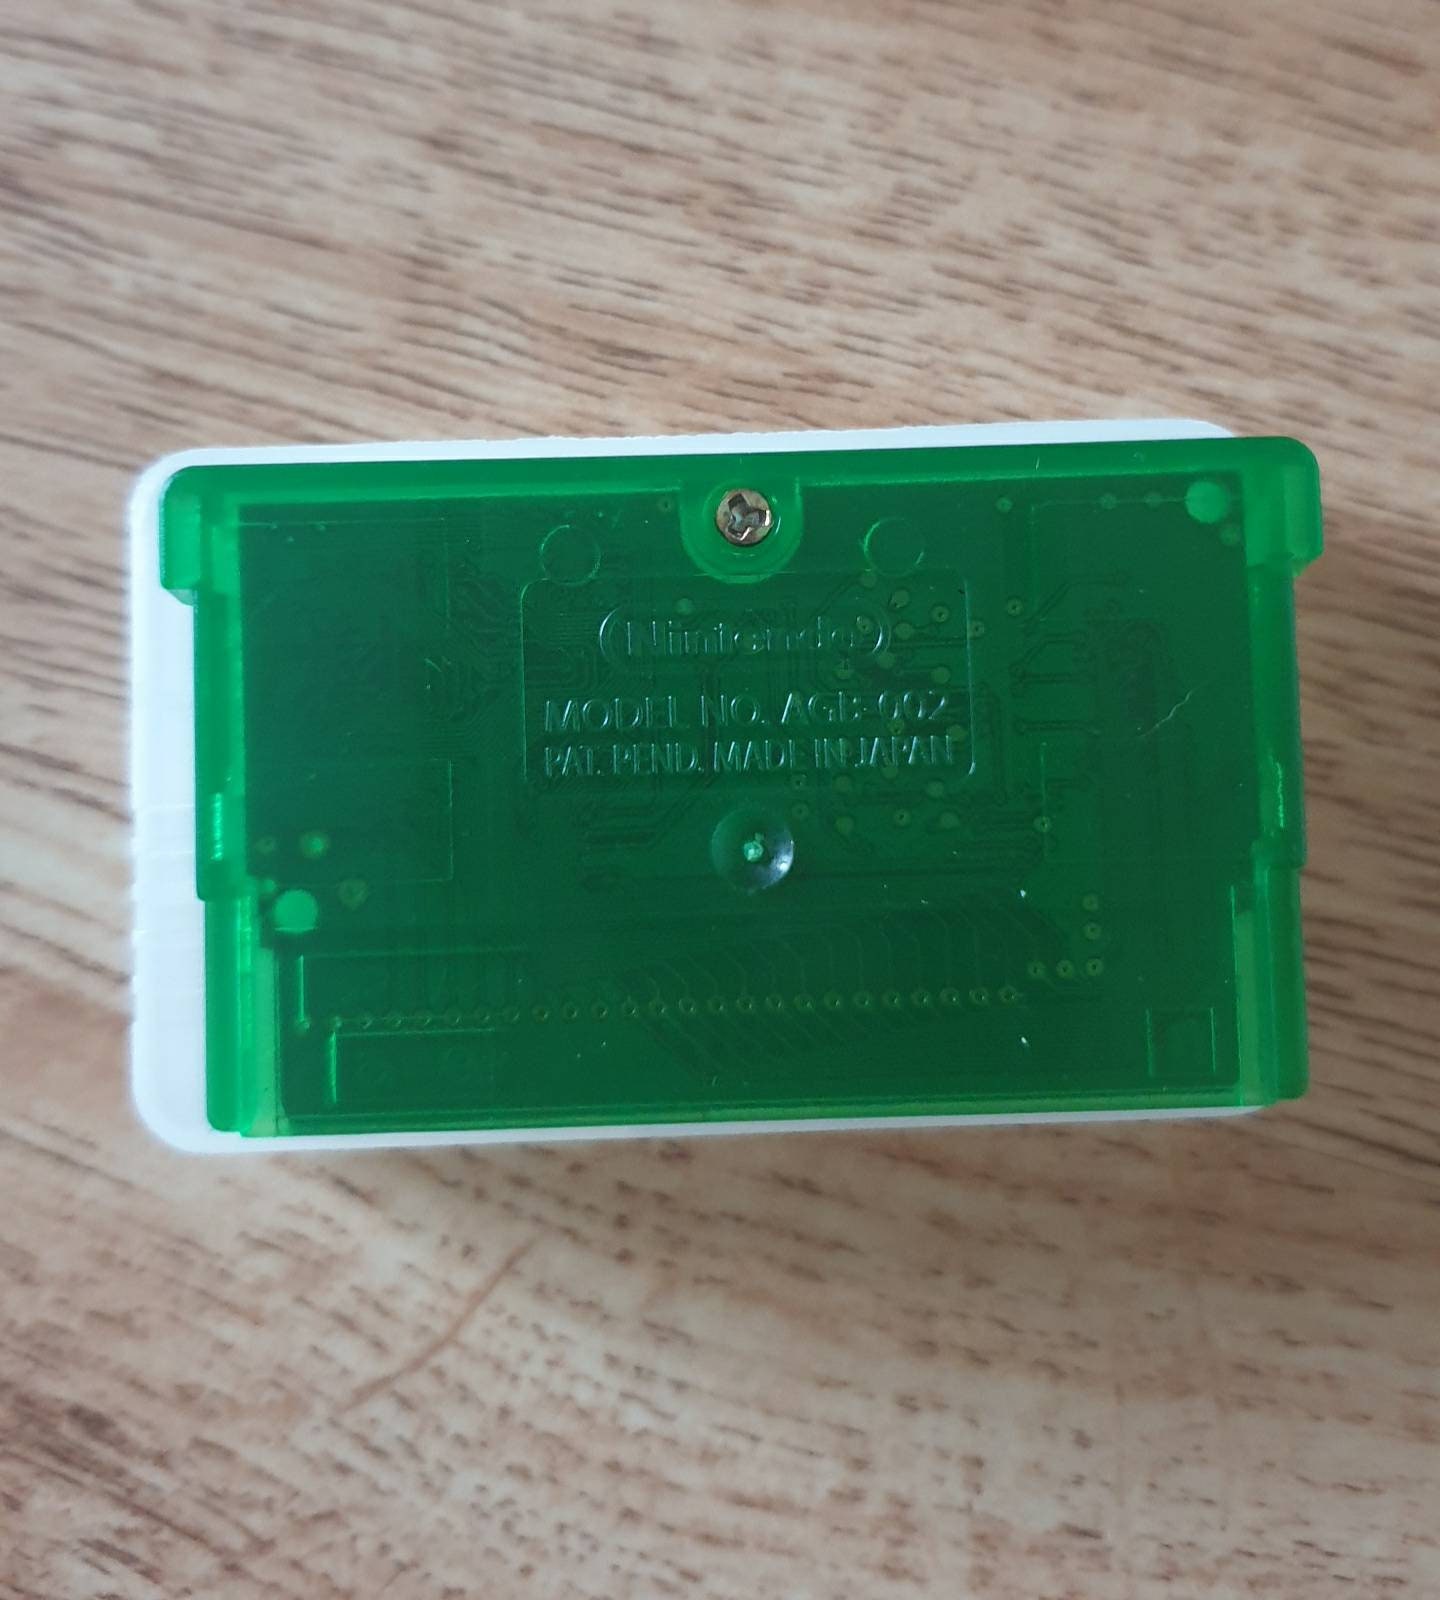 Pokémon Emerald Version (Usado) - Game Boy Advance - Shock Games